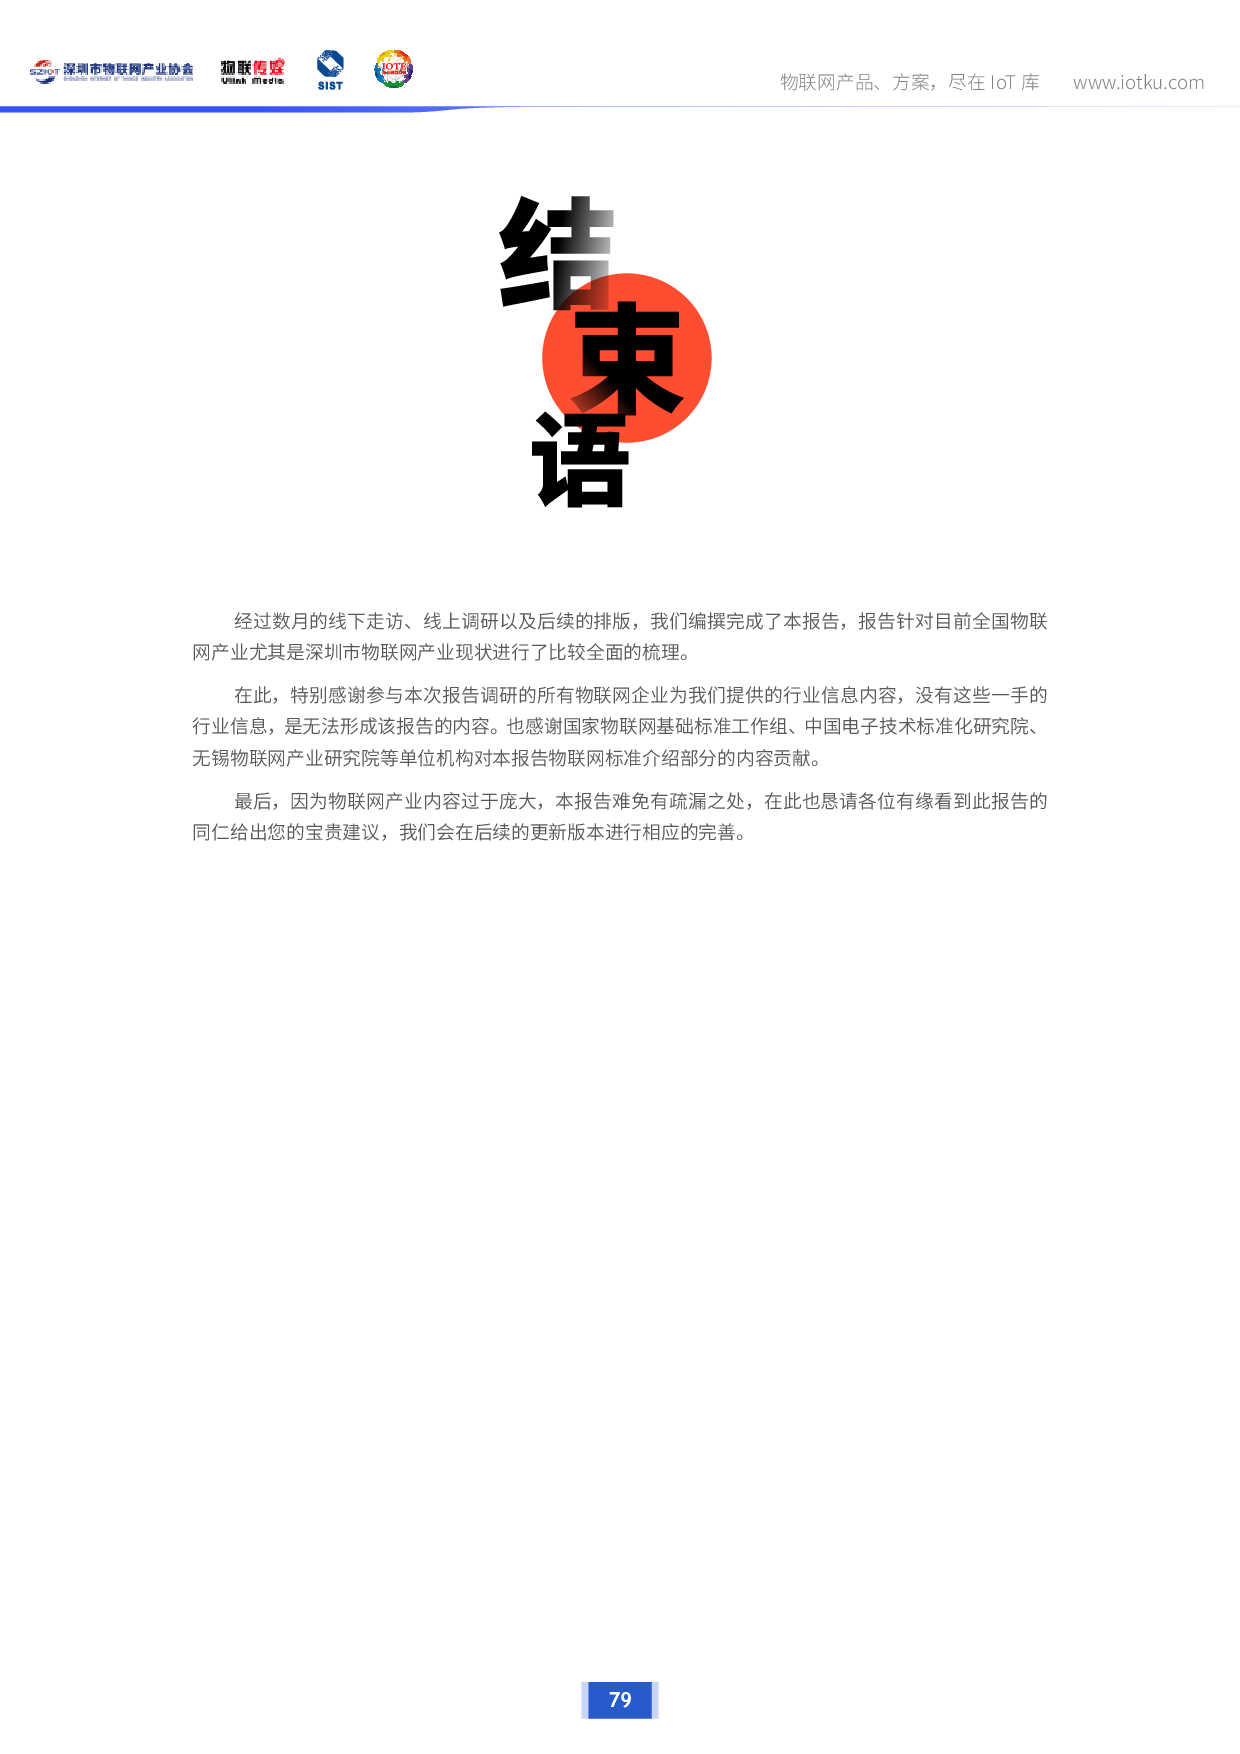 【最新发布】深圳市物联网产业调研报告2020版图片